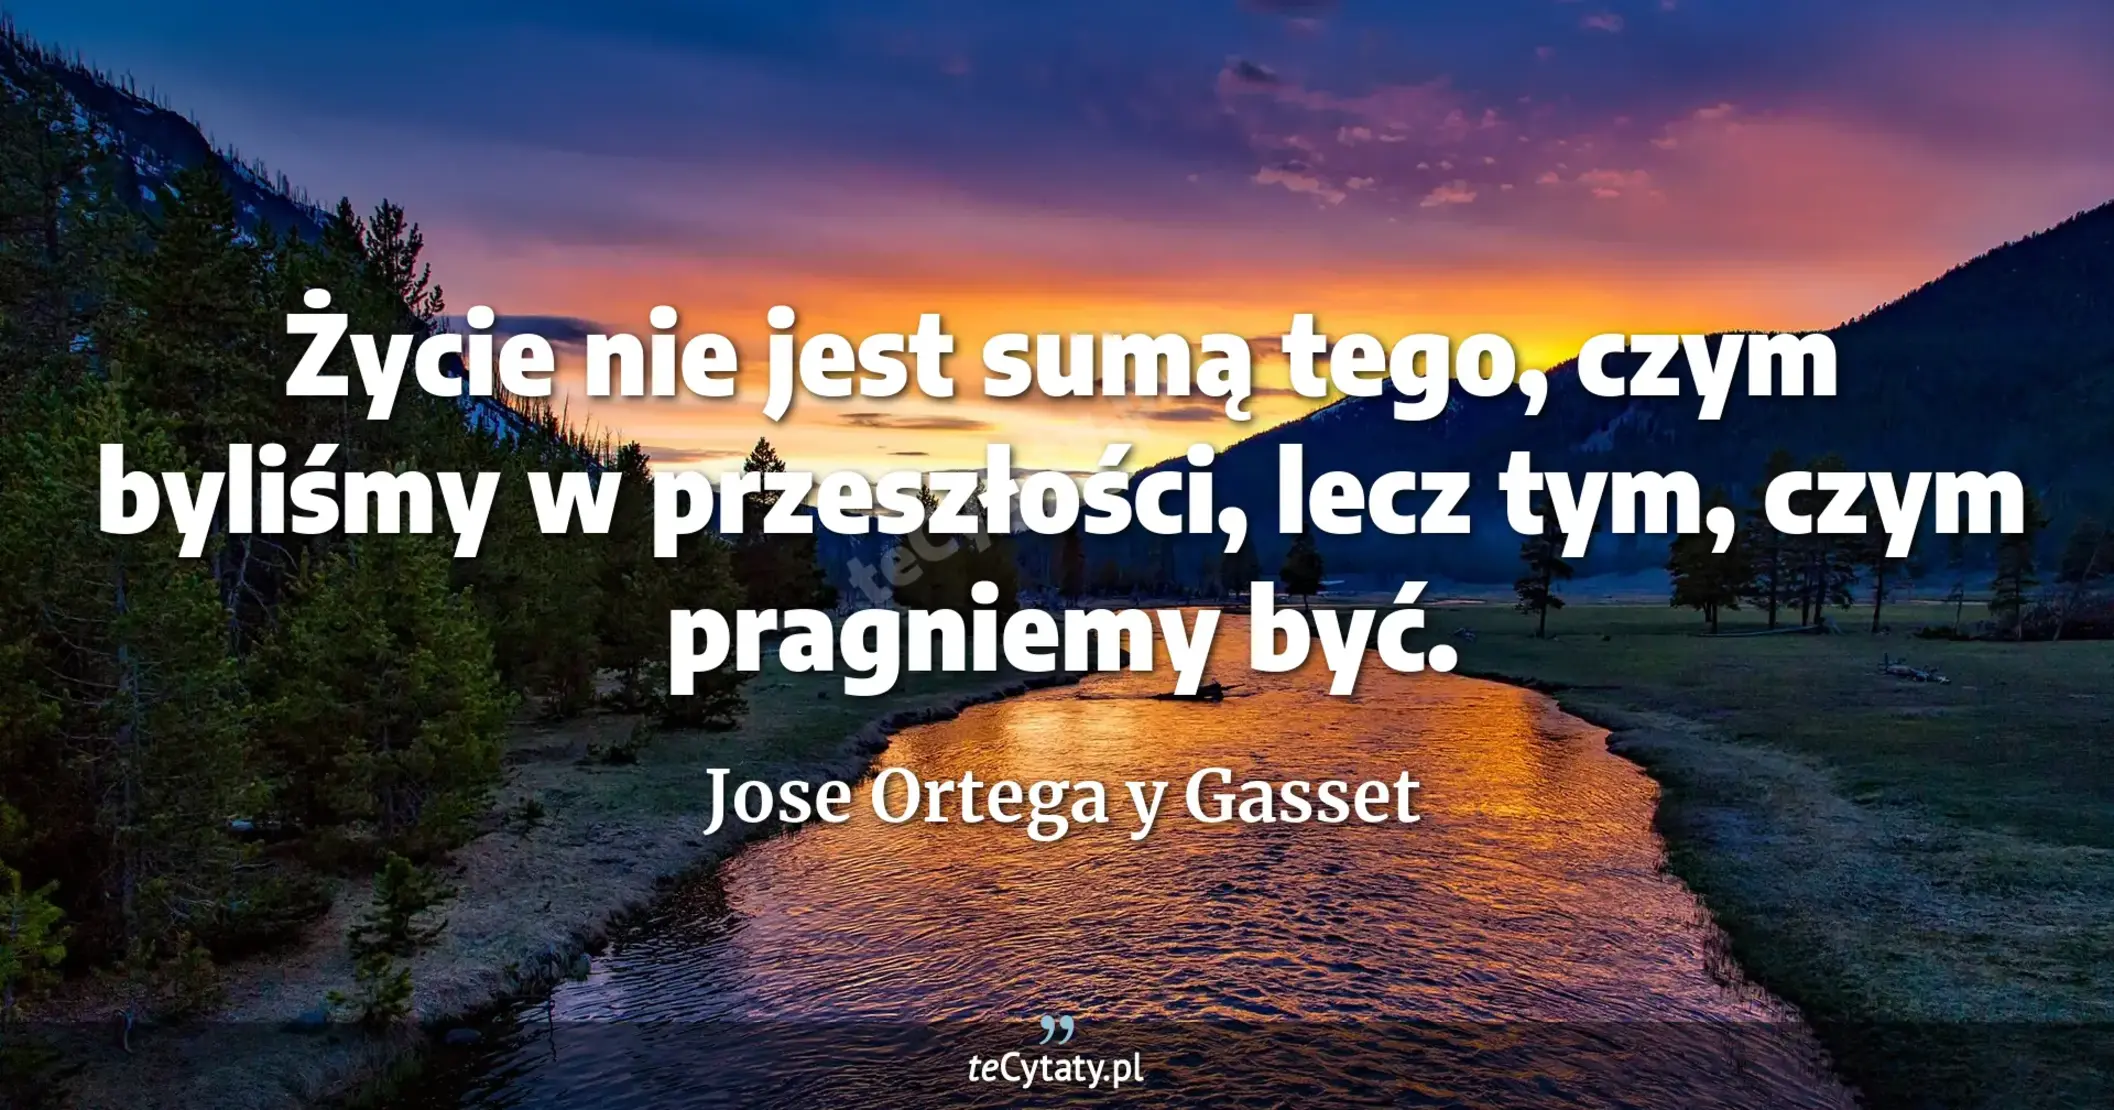 Życie nie jest sumą tego, czym byliśmy w przeszłości, lecz tym, czym pragniemy być. - Jose Ortega y Gasset